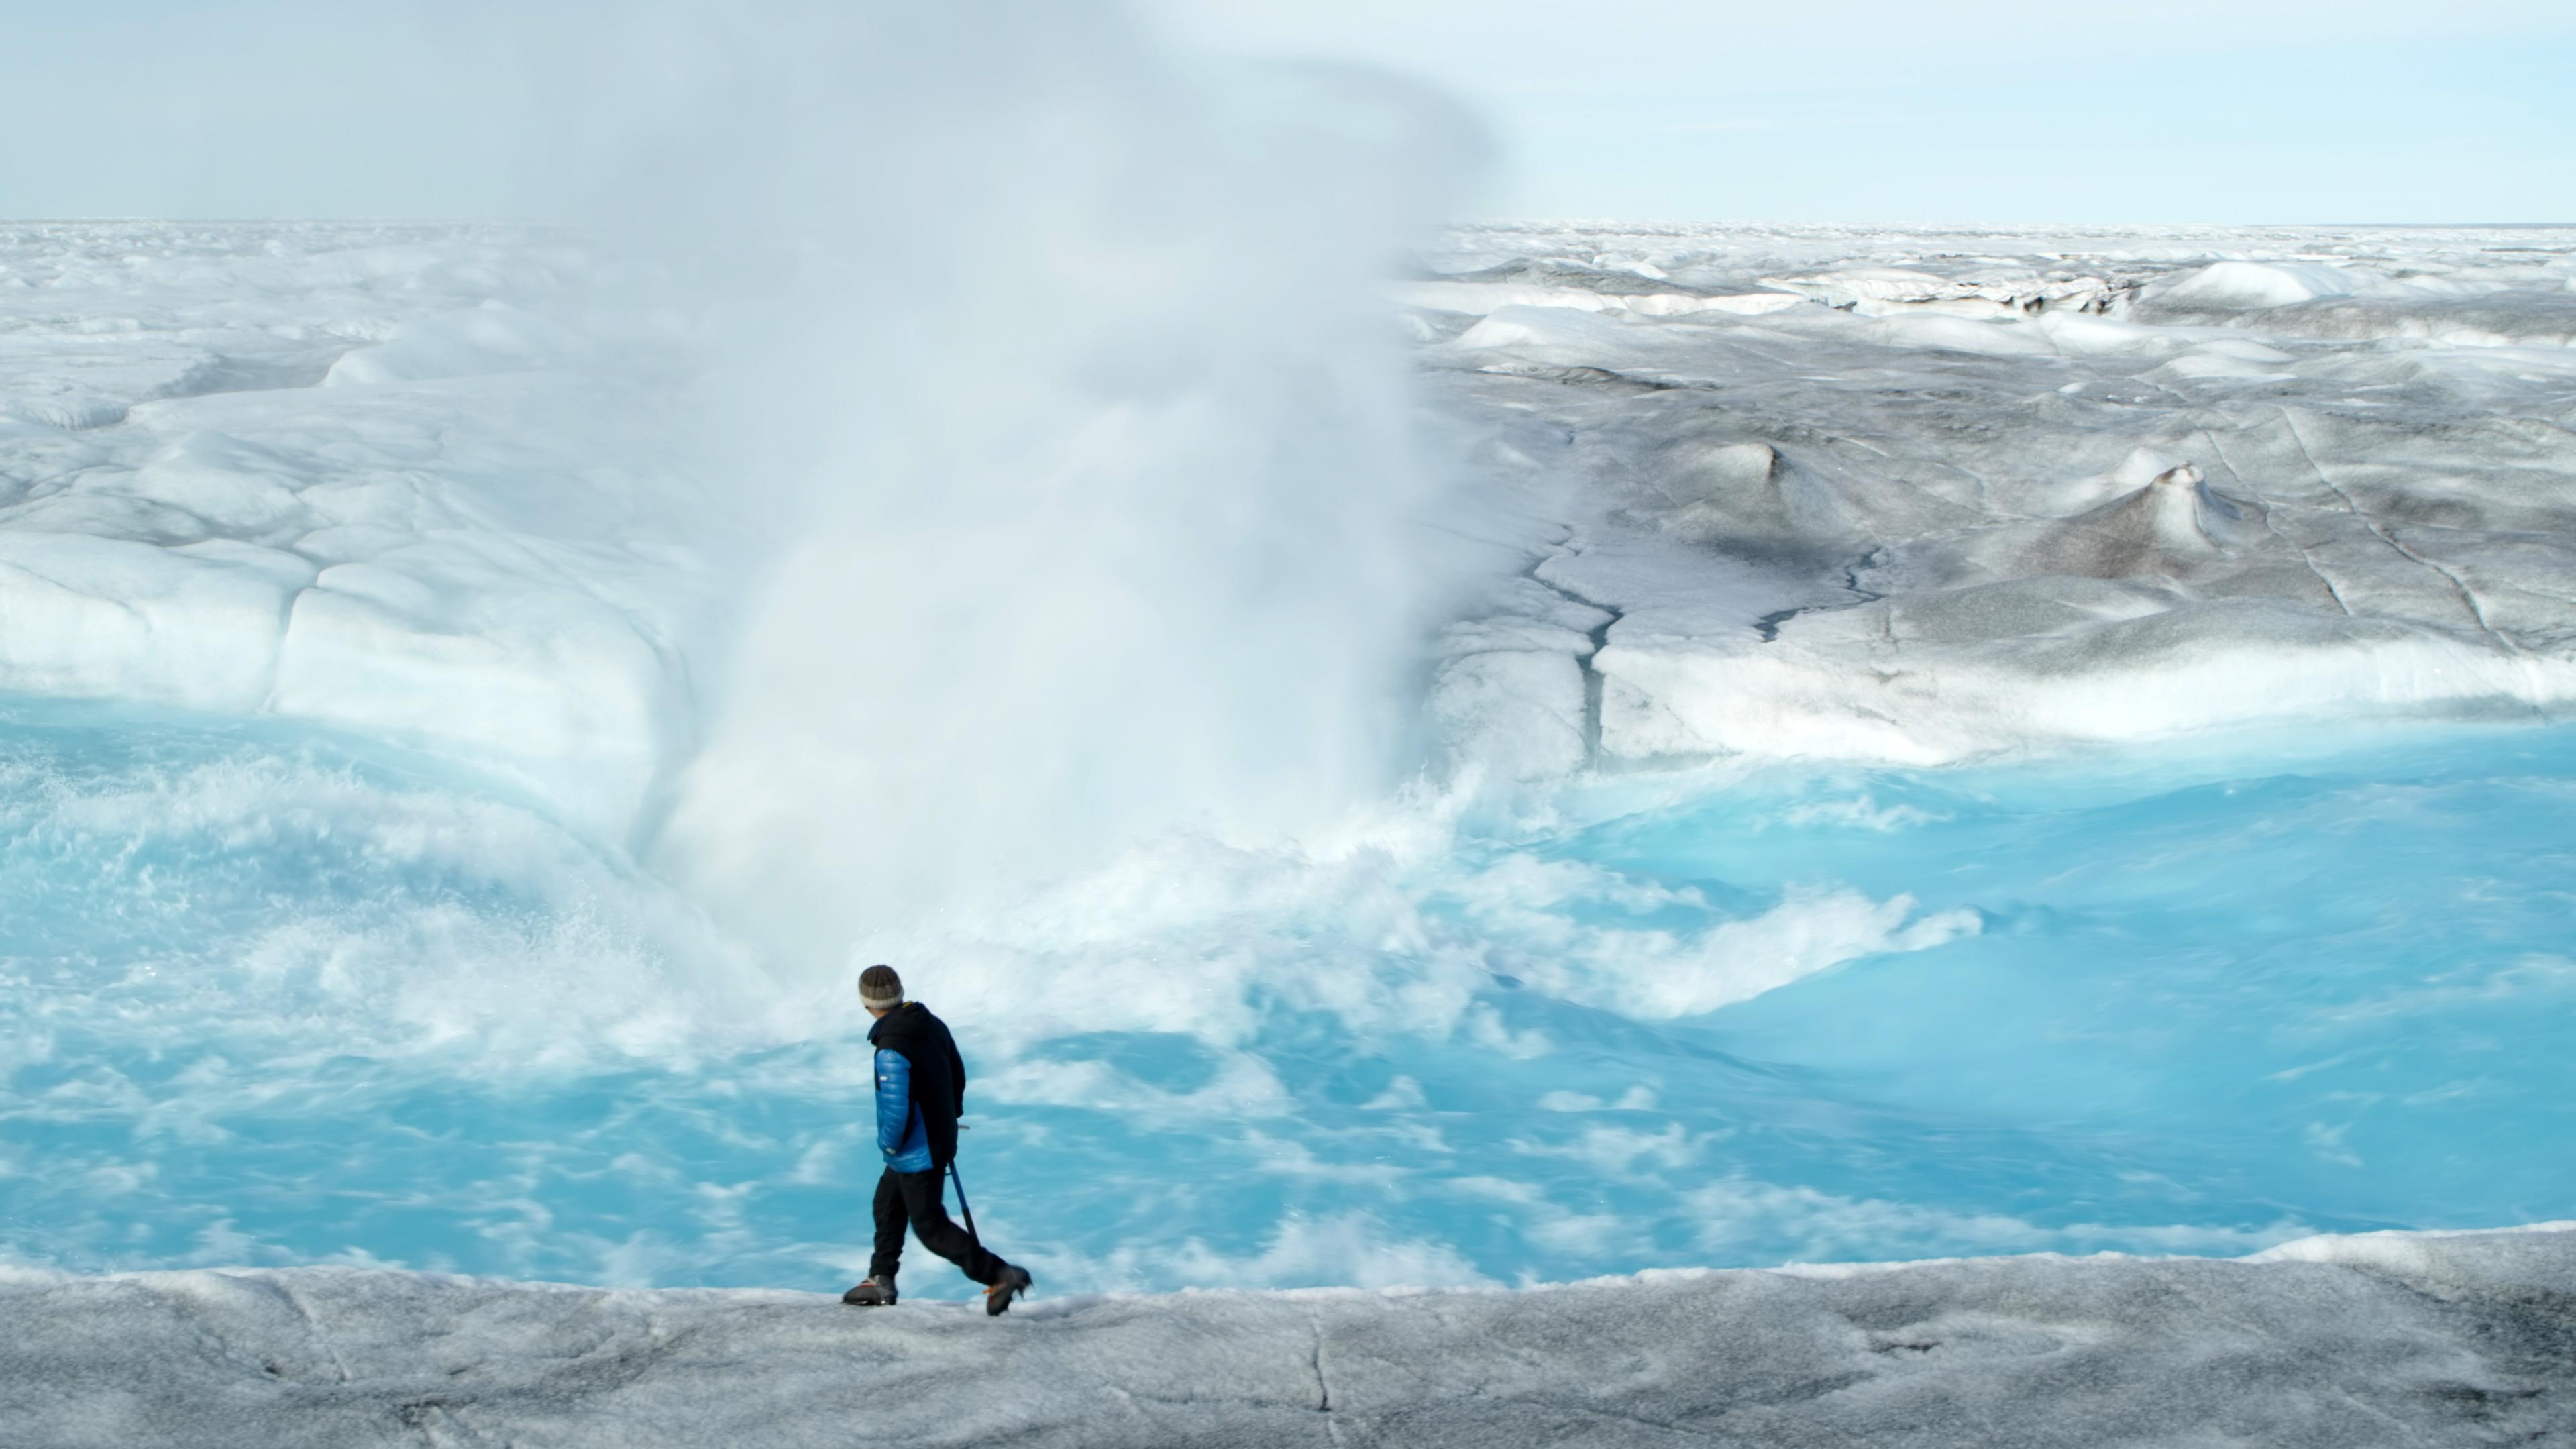 Glaziologe Prof. Alun Hubbard steht vor einem reißenden Schmelzwasserfluss auf dem Eis, während hinter ihm tosend Gischt emporsteigt.